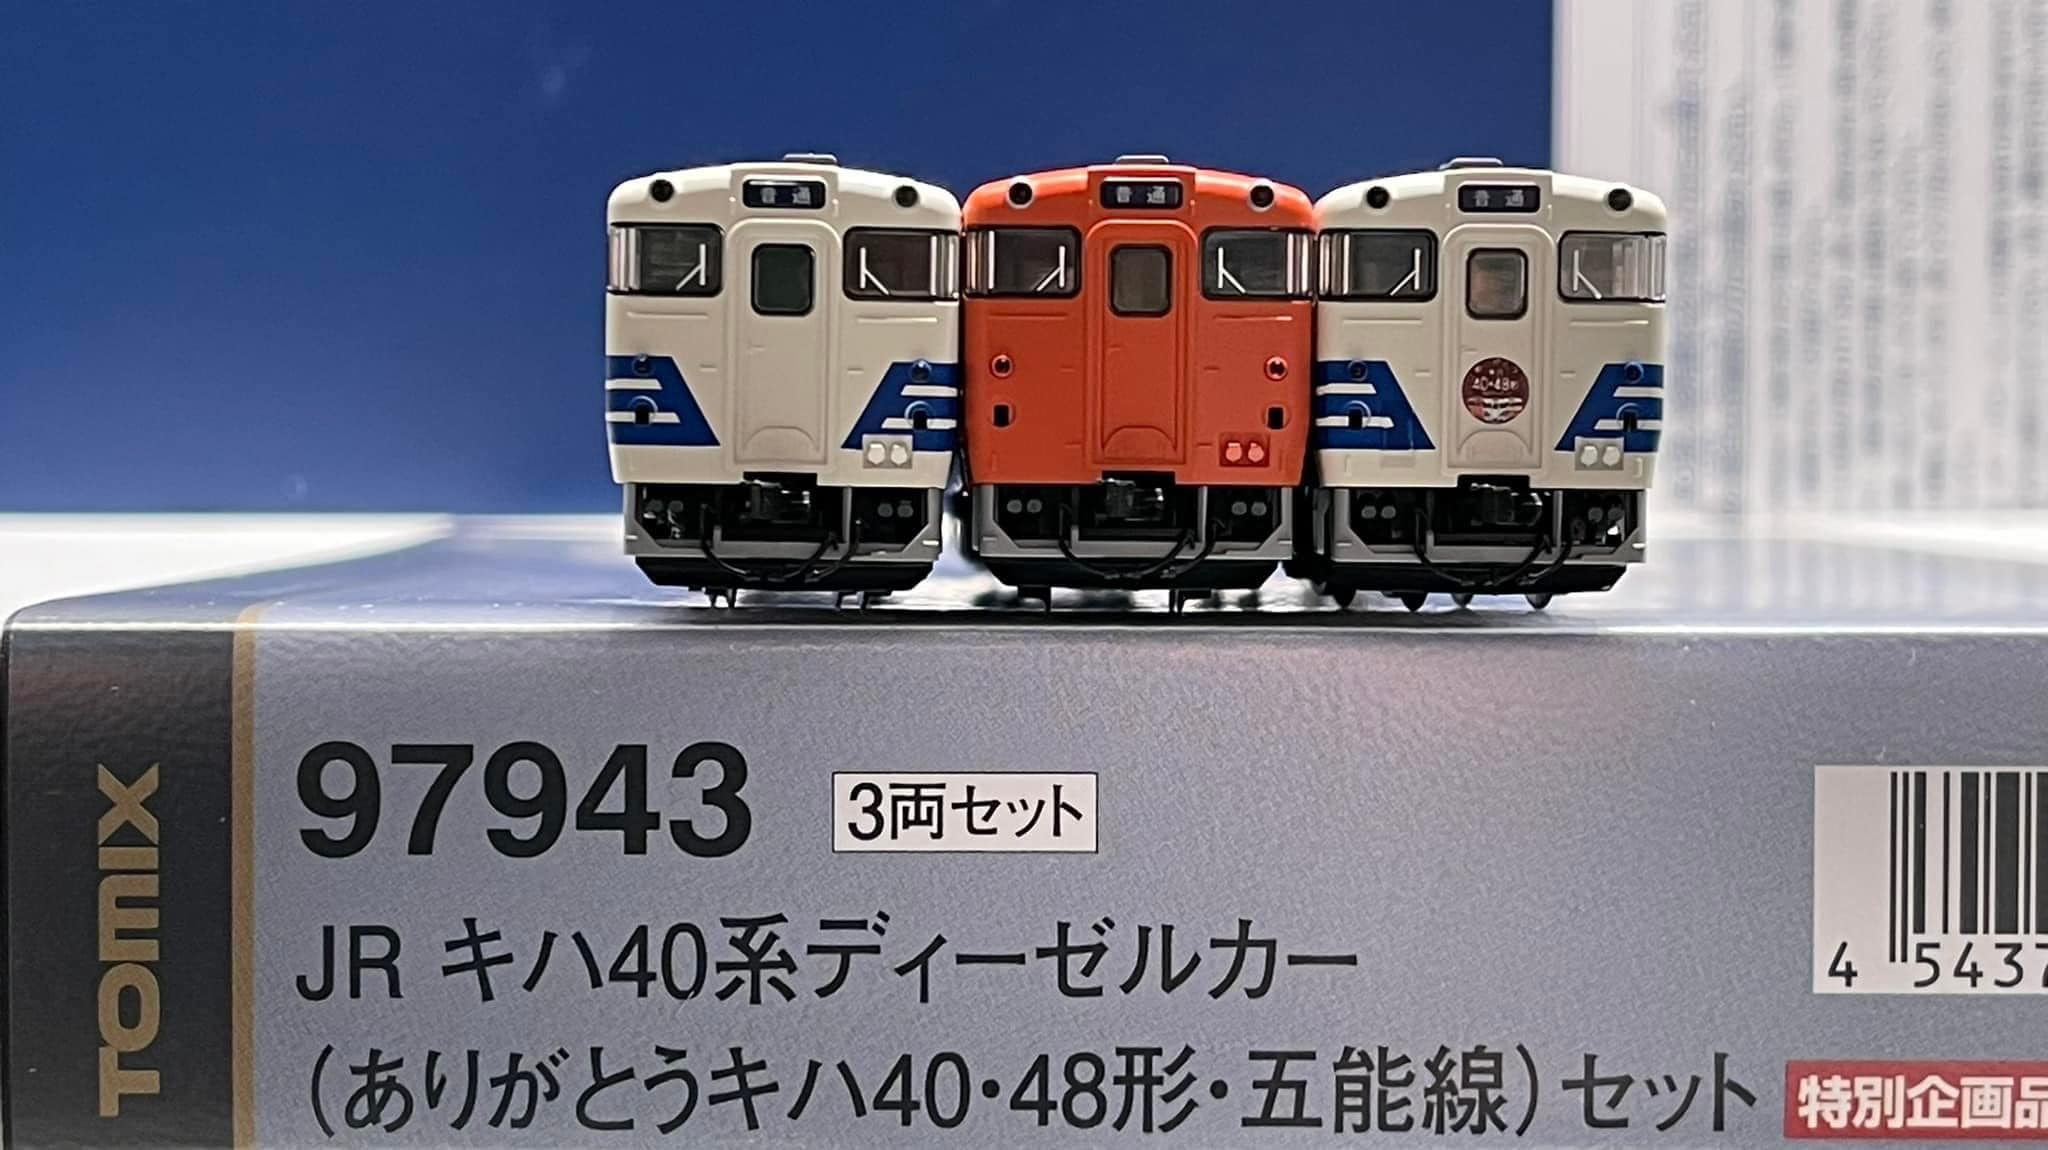 【公式直販】TOMIX 97943 JR キハ40系ディーゼルカー(ありがとうキハ40・48形・五能線)セット ディーゼルカー